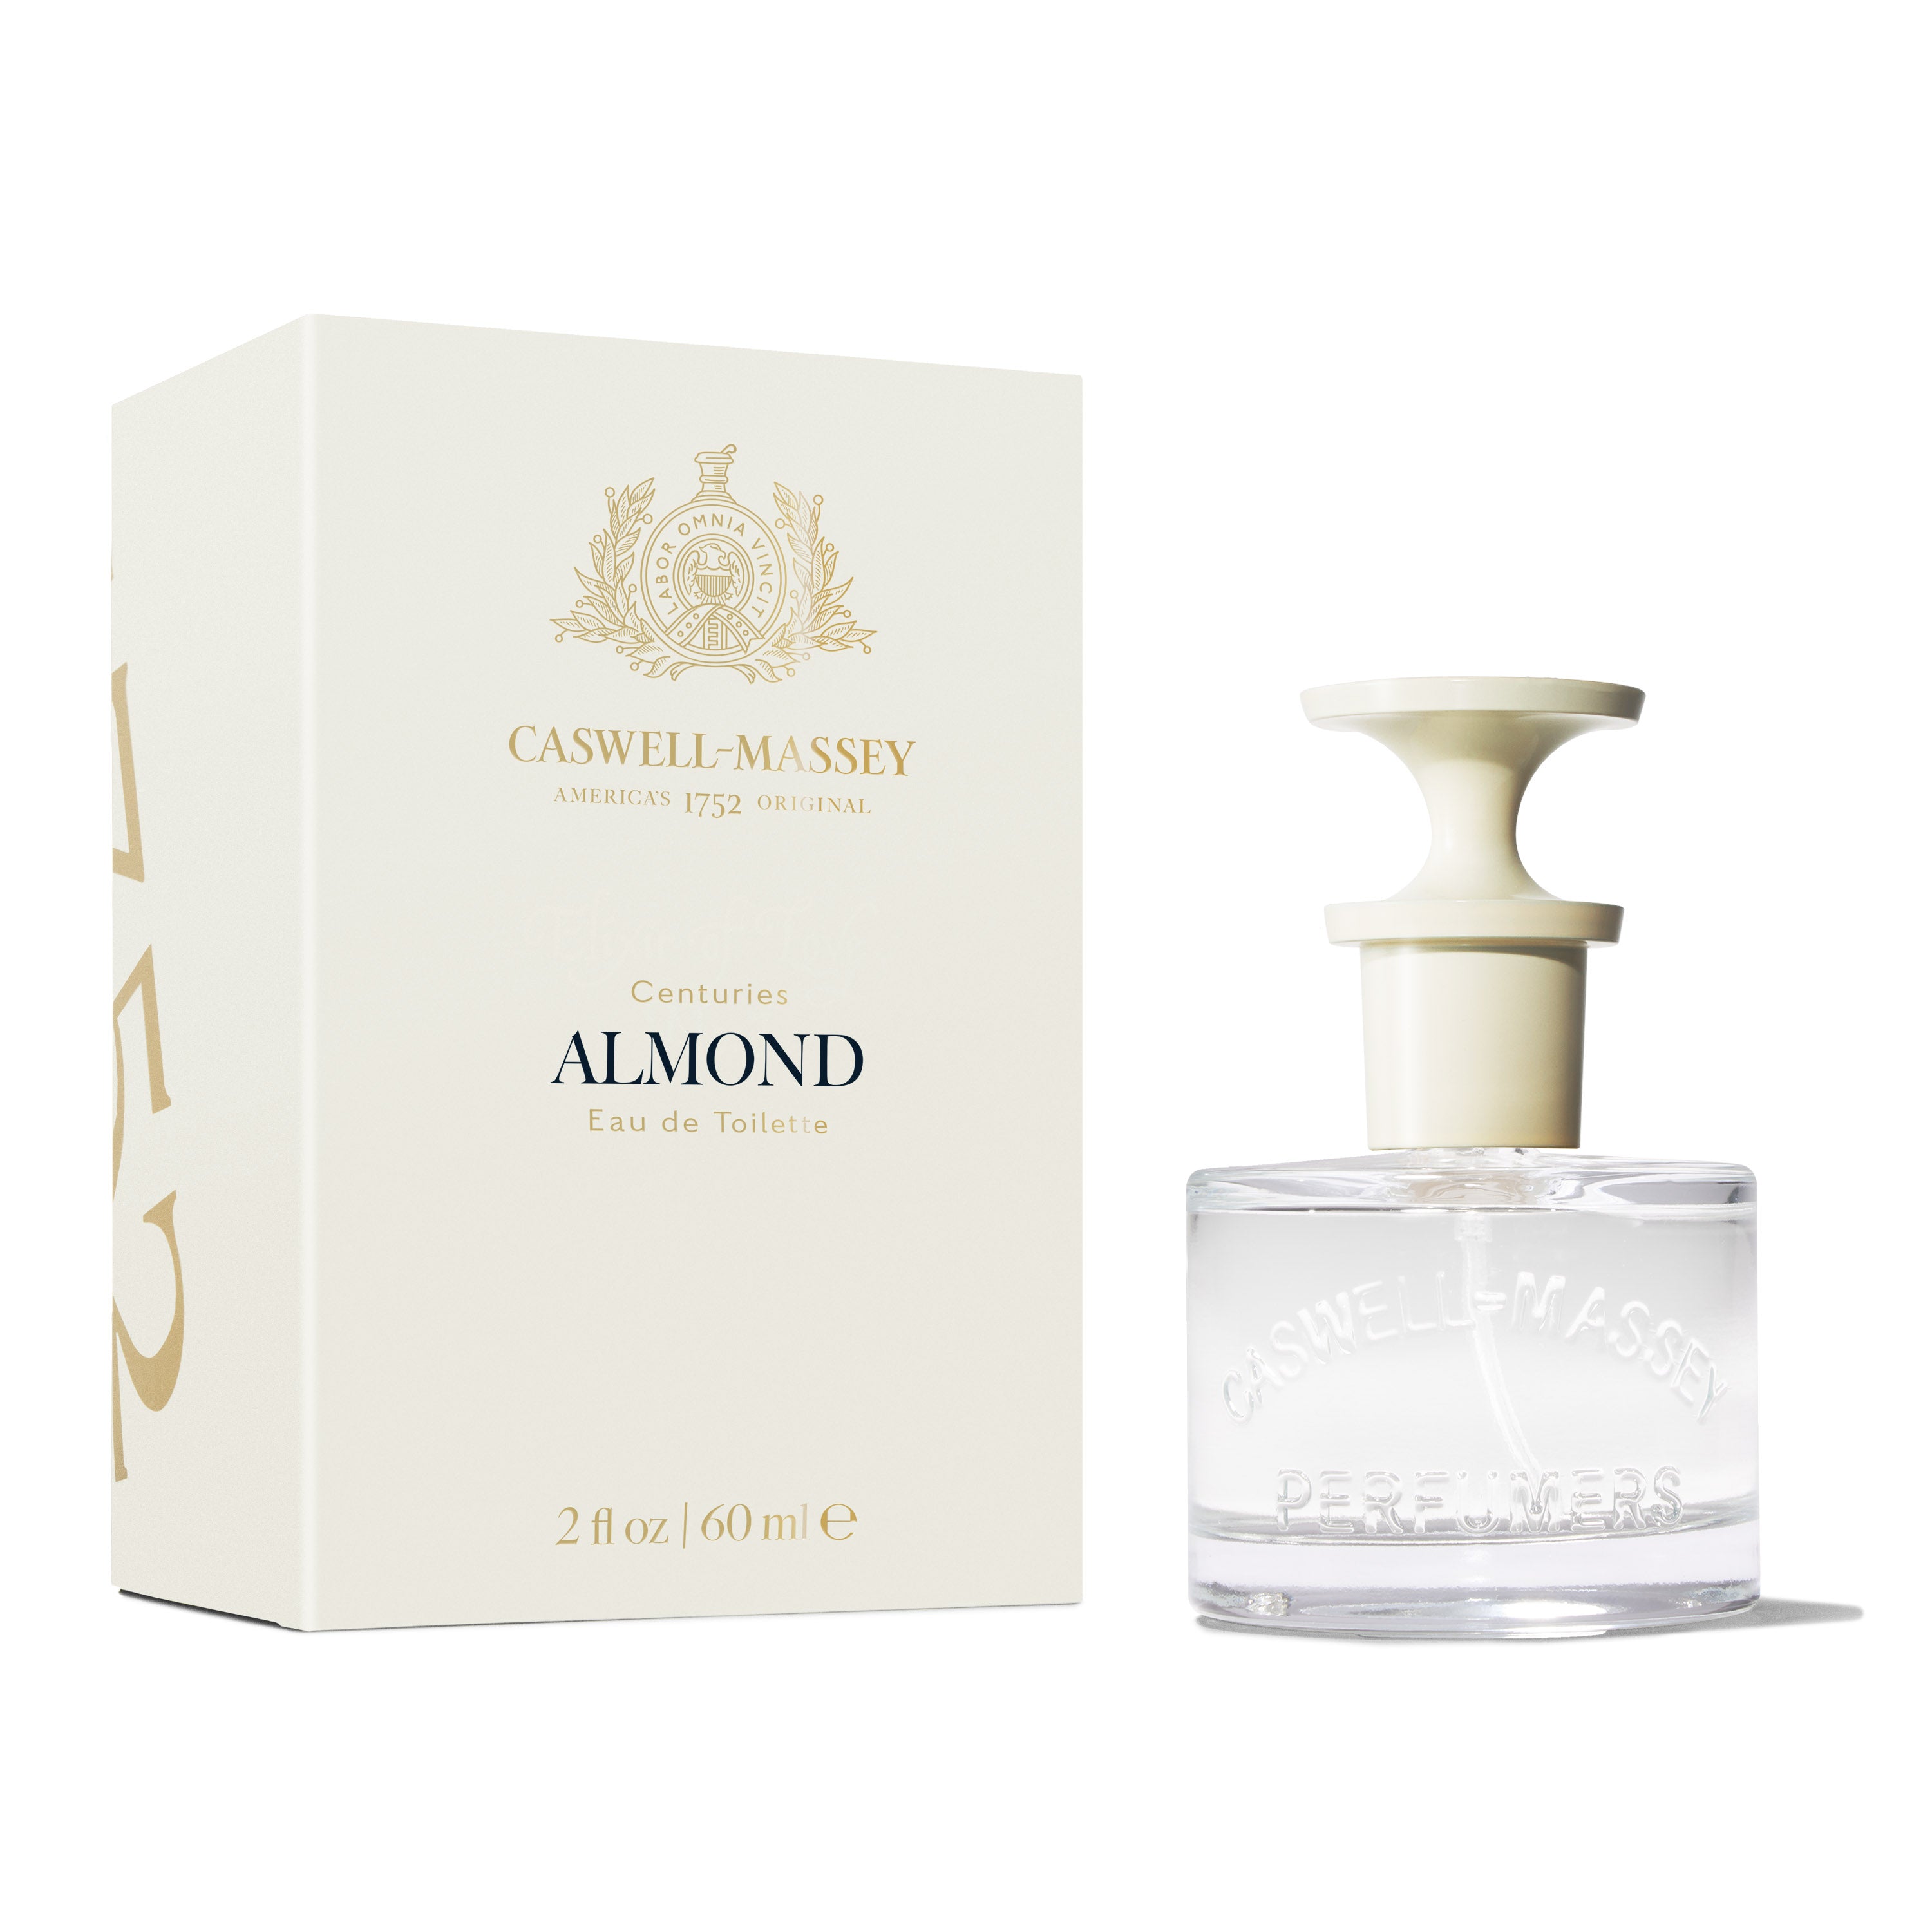 Almond Eau de Toilette, Fine Fragrance by Caswell-Massey 60mL Full Size